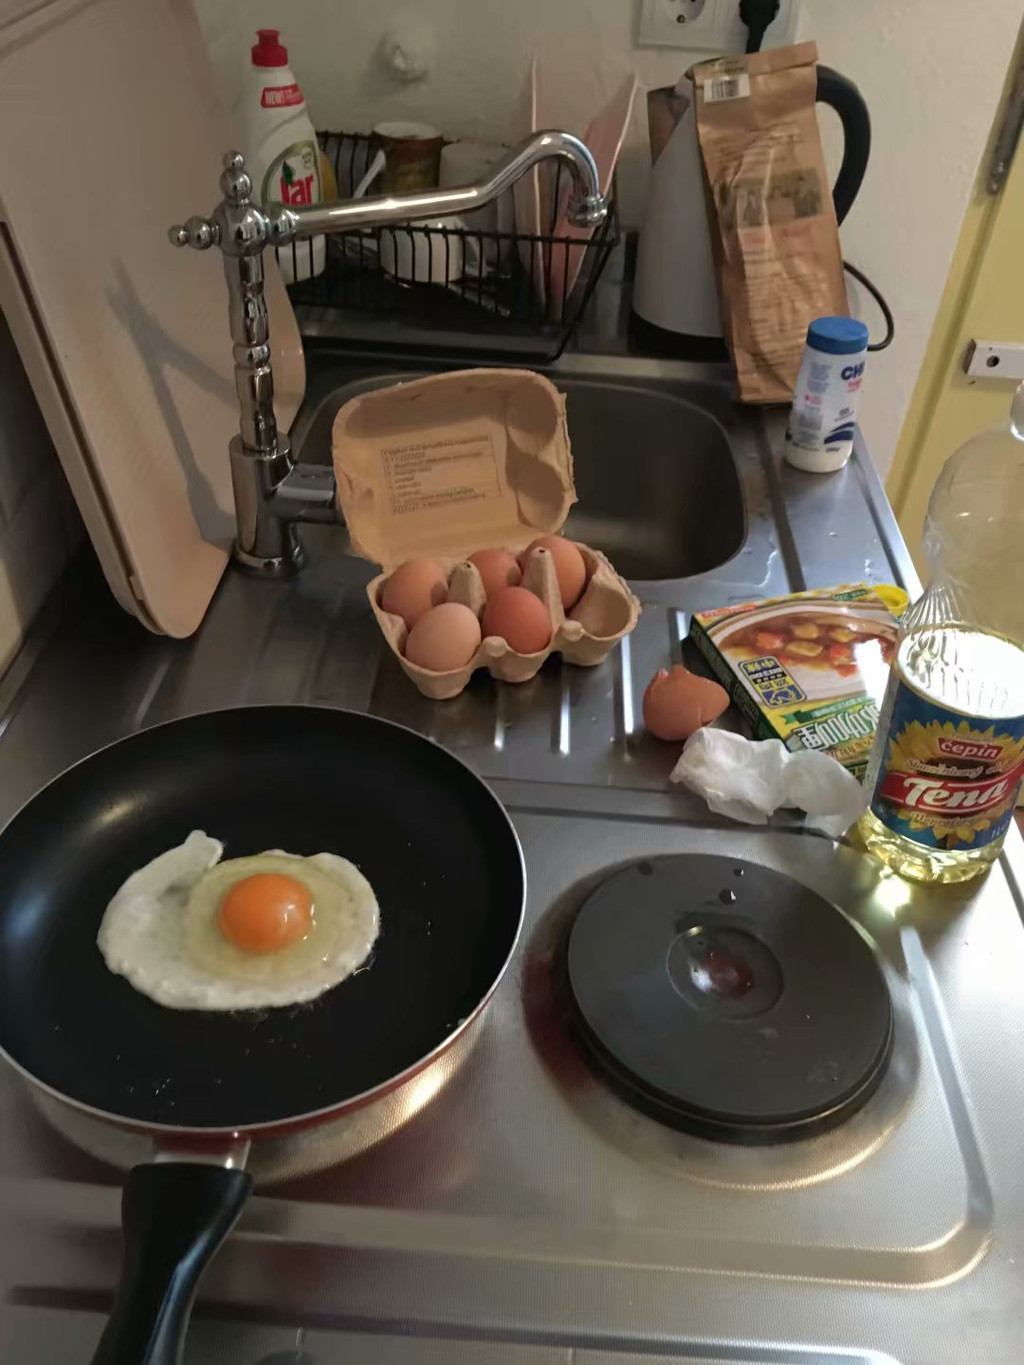 8:20171004,昨晚回来时路经超市买了点鸡蛋和面,今天可以自己做早餐